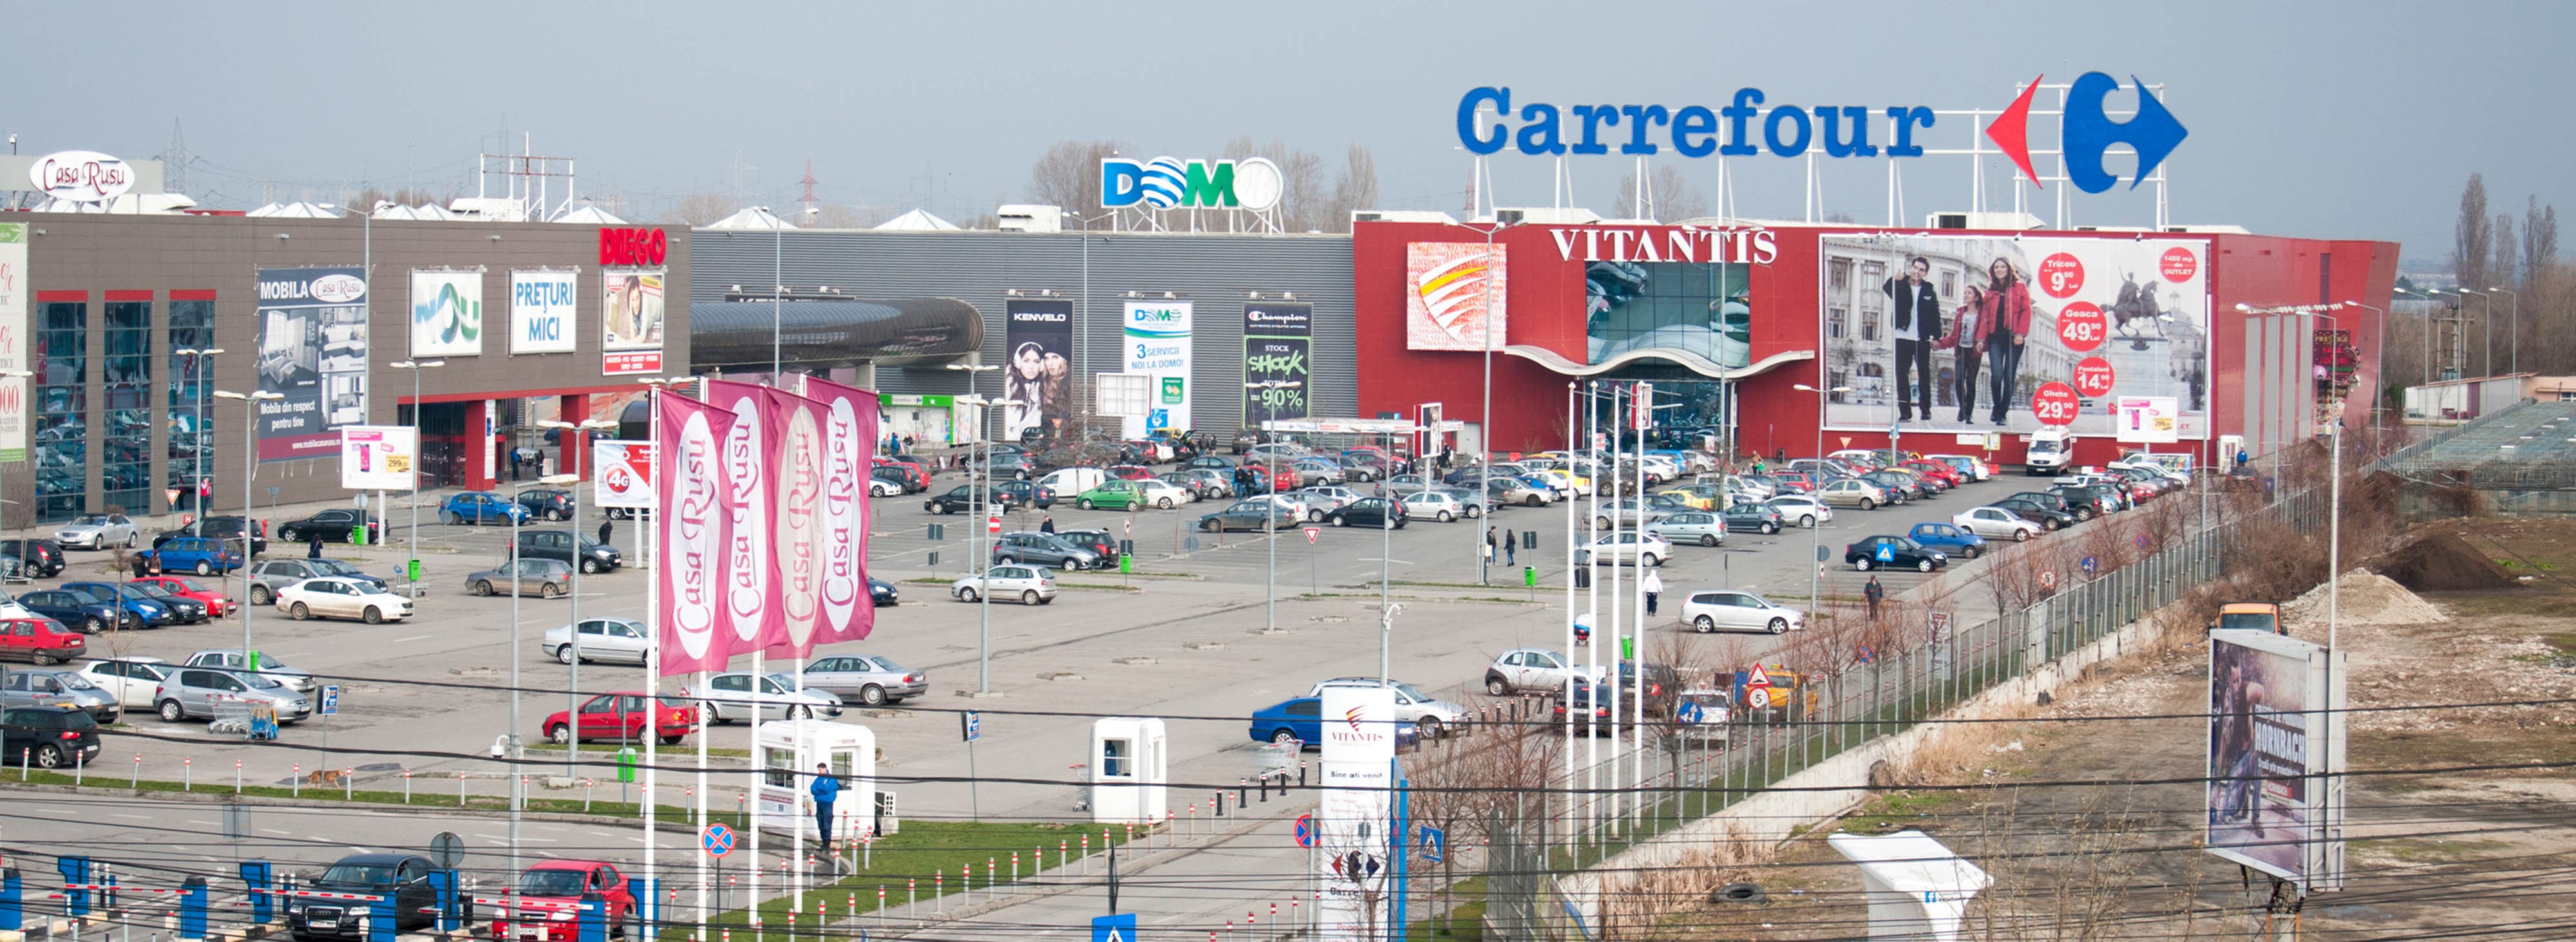 Carrefour store in Romania. 